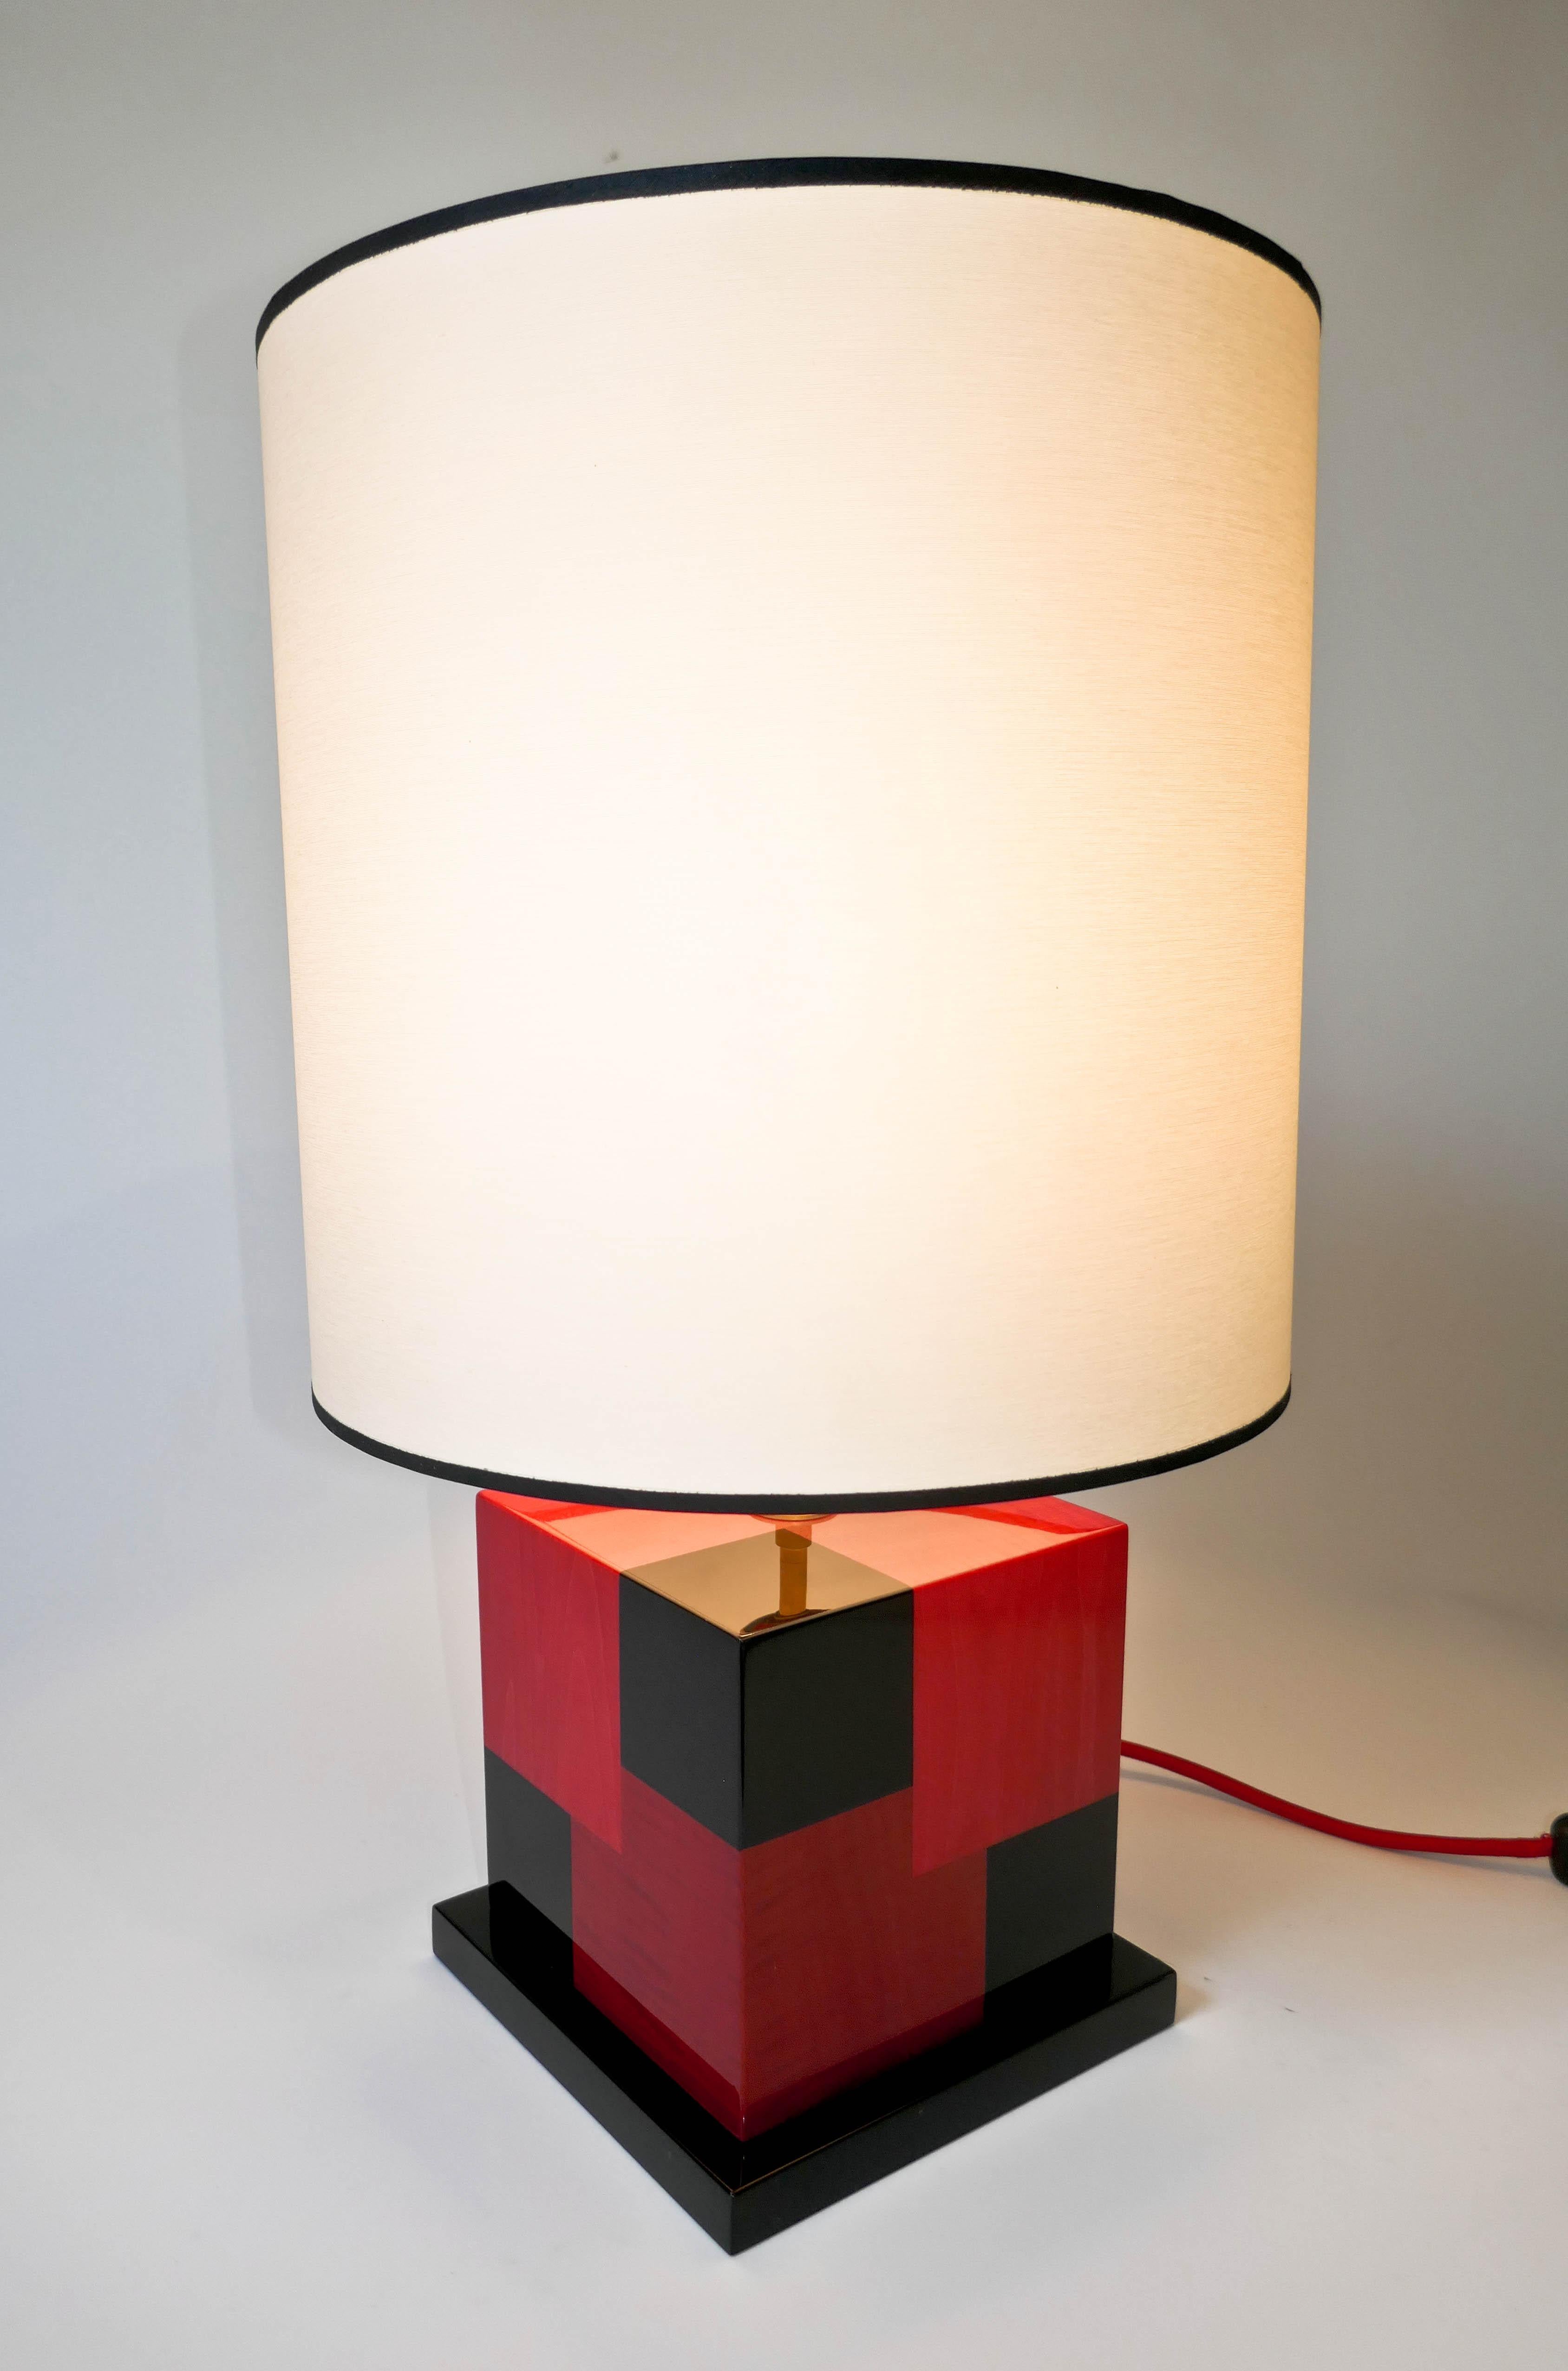 Lampe de table en marqueterie de sycomore teinté noir, rouge clair et rouge foncé.
Fabriquée avec soin dans notre atelier parisien, cette lampe a un effet cinétique utilisant les différentes couleurs pour créer une impression de profondeur. La lampe